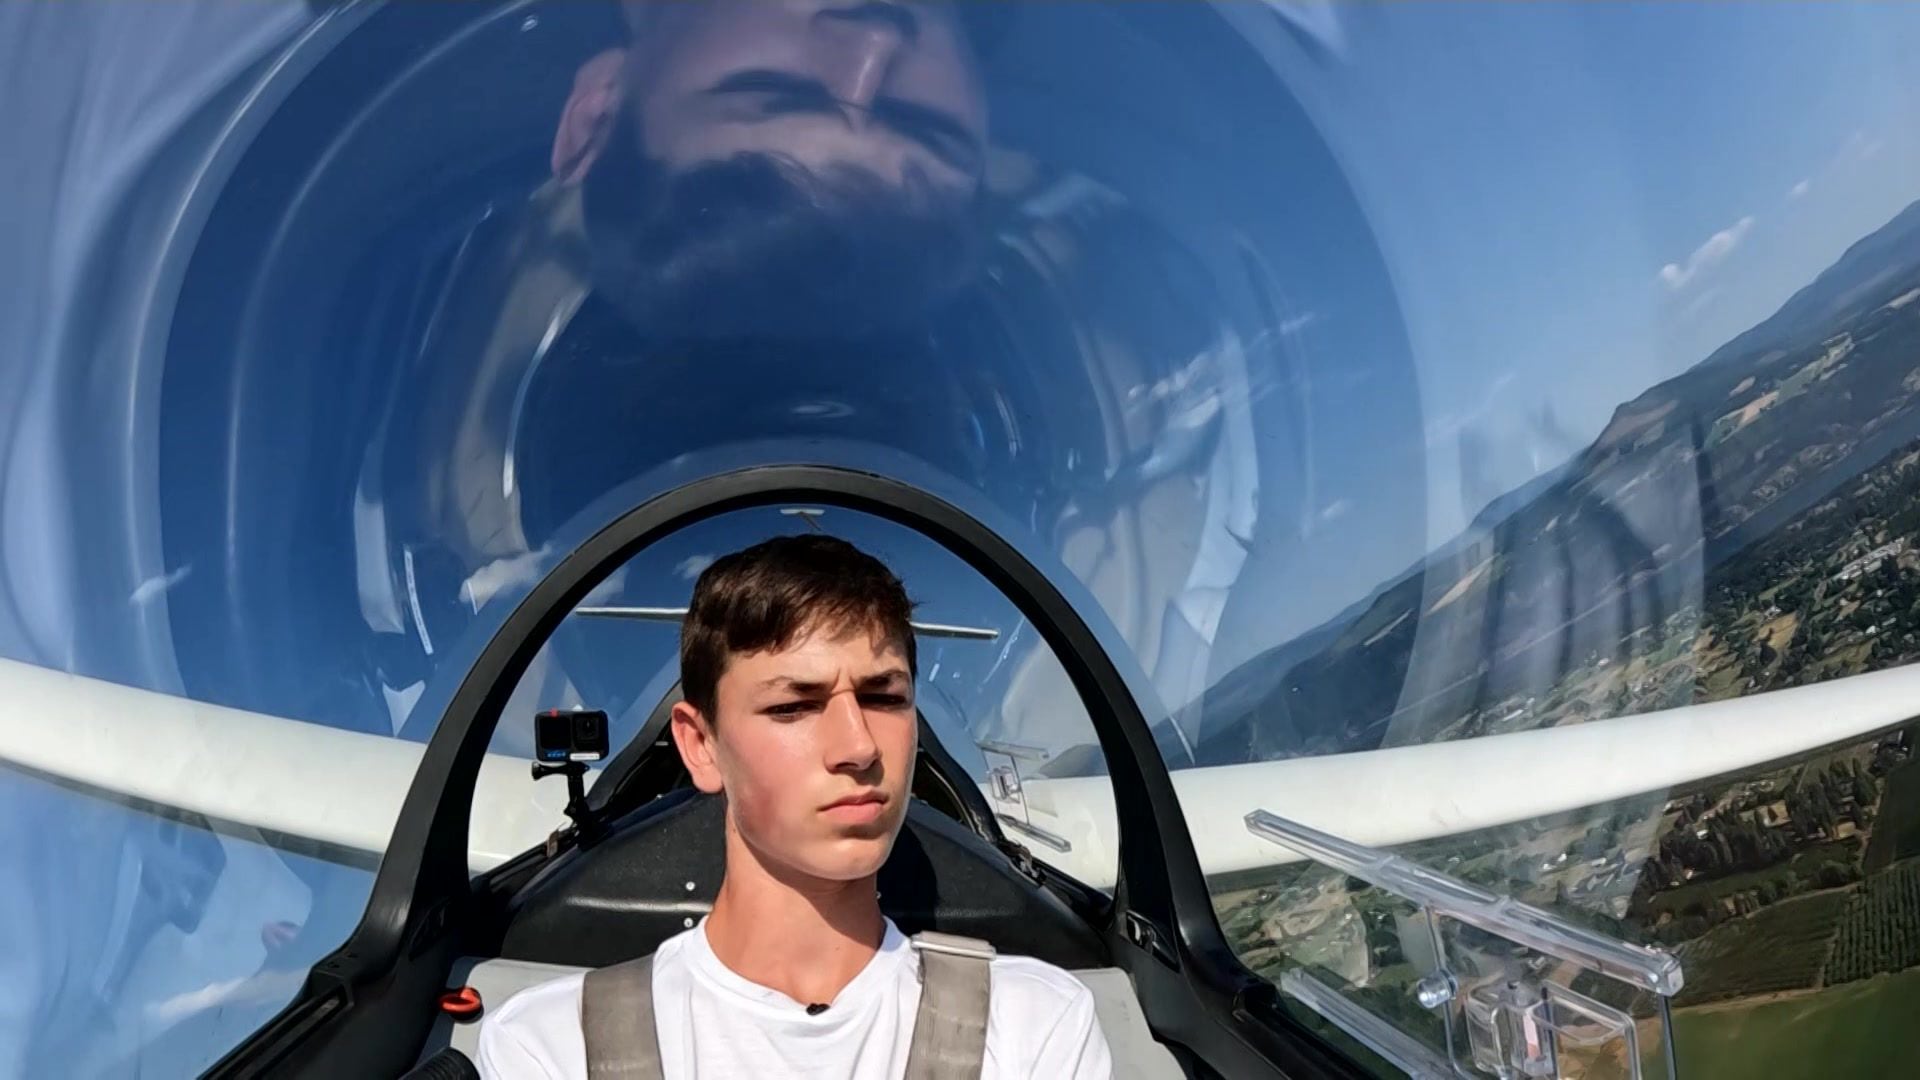 Pilot Rise Flight School Learn to Fly